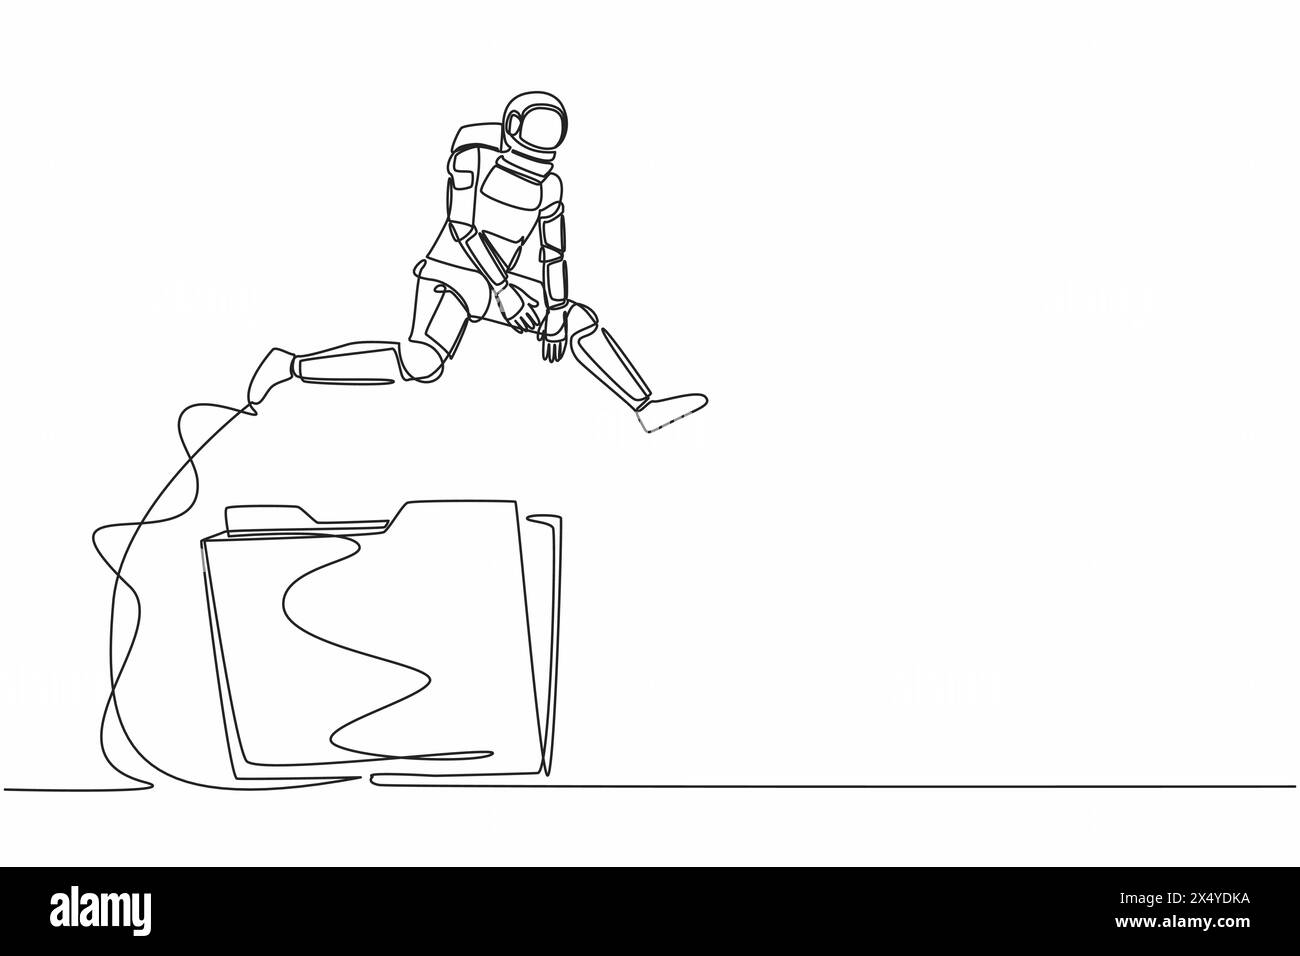 Eine einzelne einzeilige Zeichnung Astronaut springt über Ordnersymbol. Benutzerdatenarchiv in Raumfahrtunternehmen. Papierdokument in Büropapier. Kosmisches Galaxienraumkonzept. Co Stock Vektor